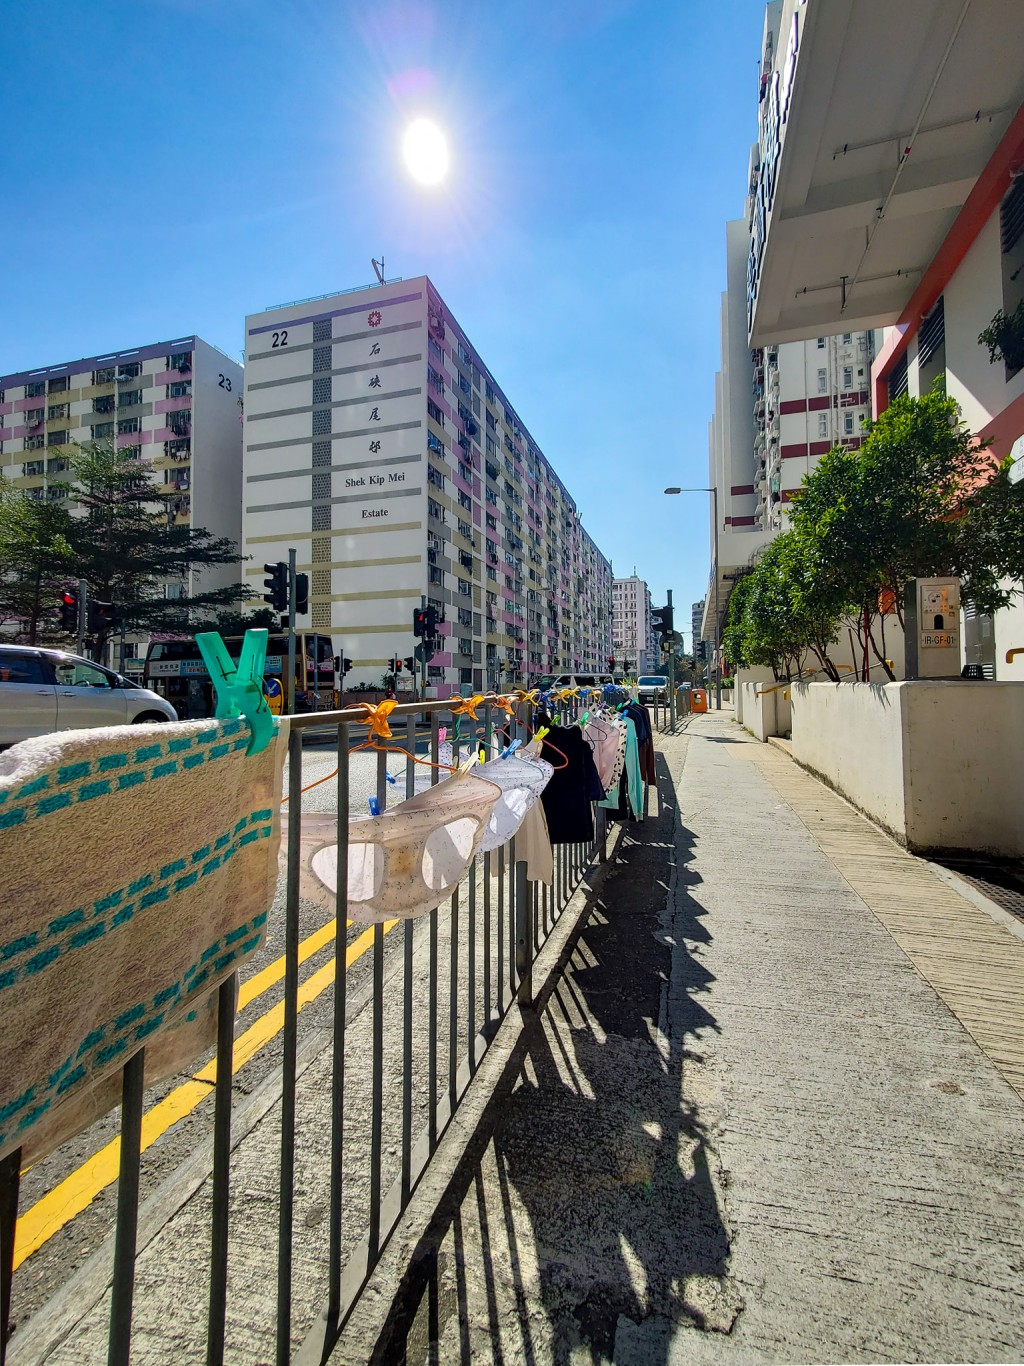 在路边的栏杆上挂有多件衣物，包括数条内裤及上衣等。「香港风景摄影会」FB